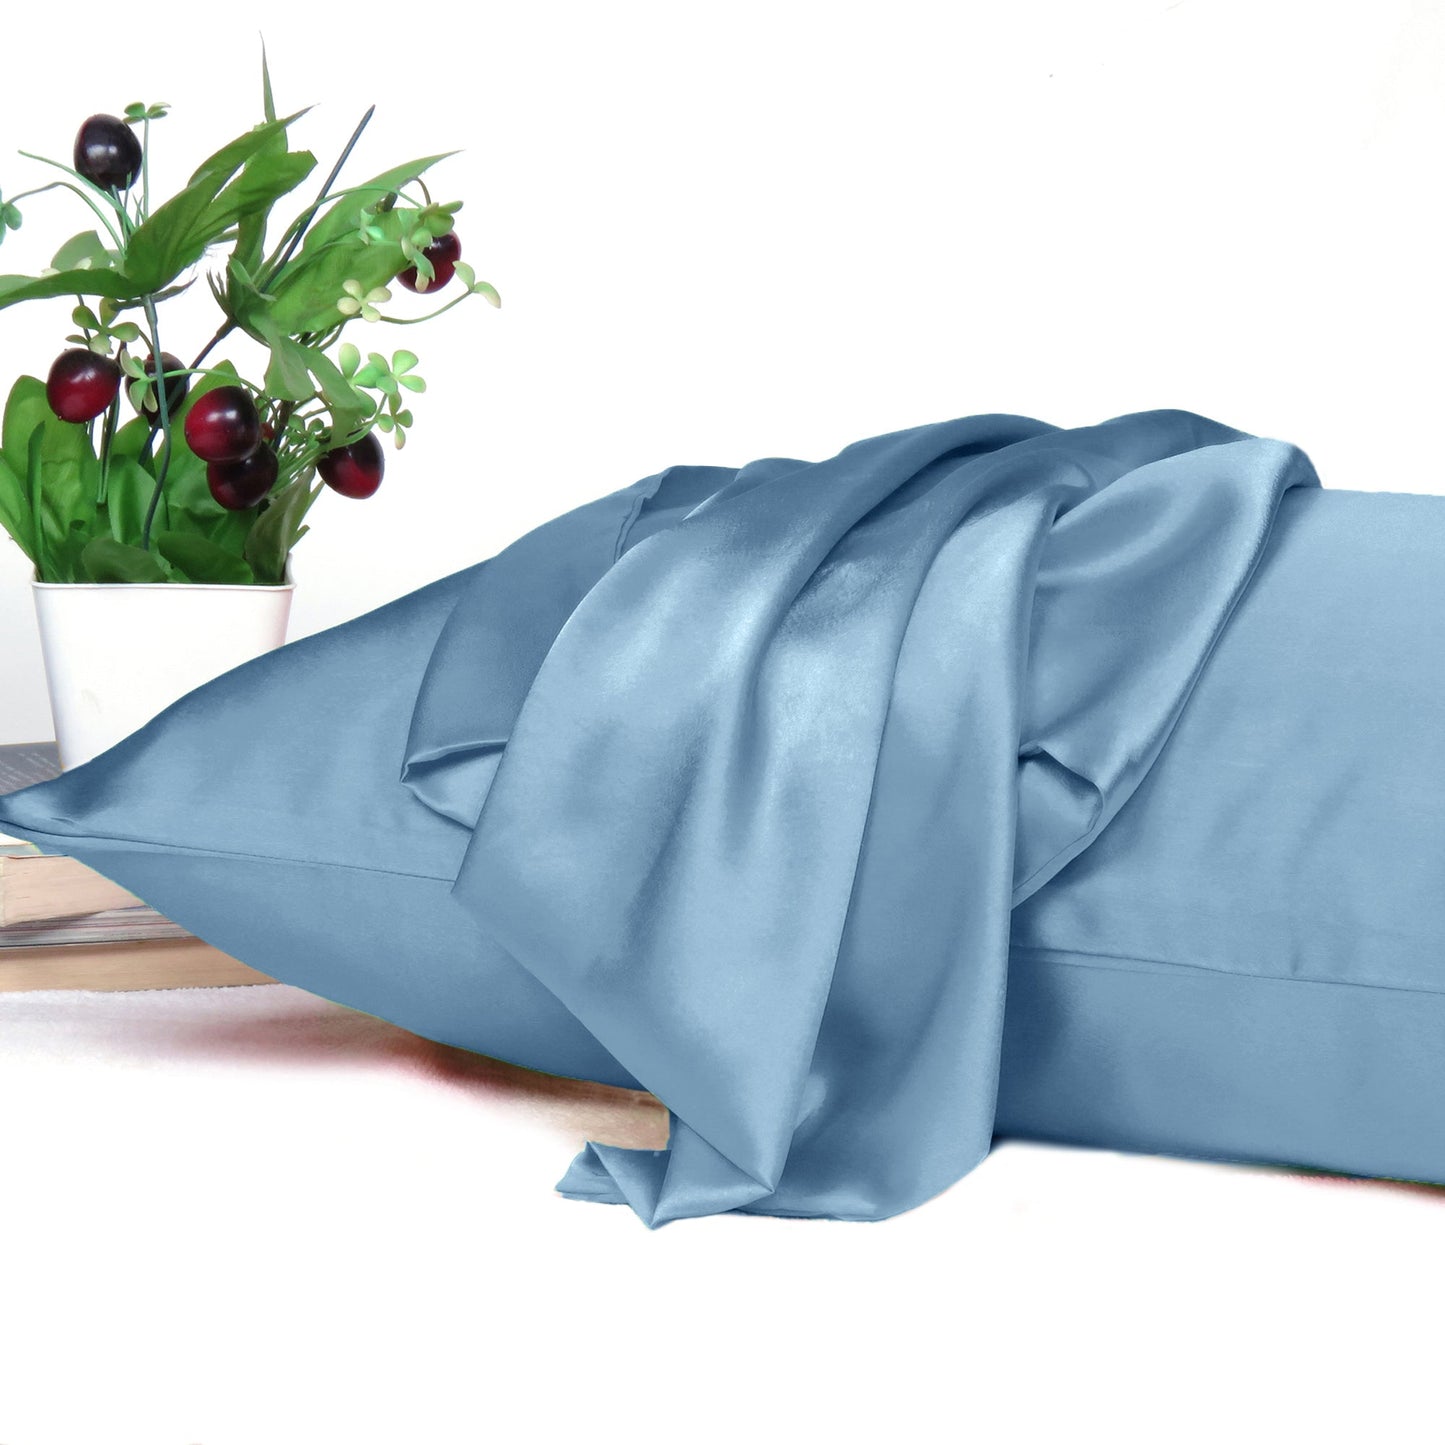 Luxury Soft Plain Satin Silk Pillowcases in Set of 2 - Quiet Harbor